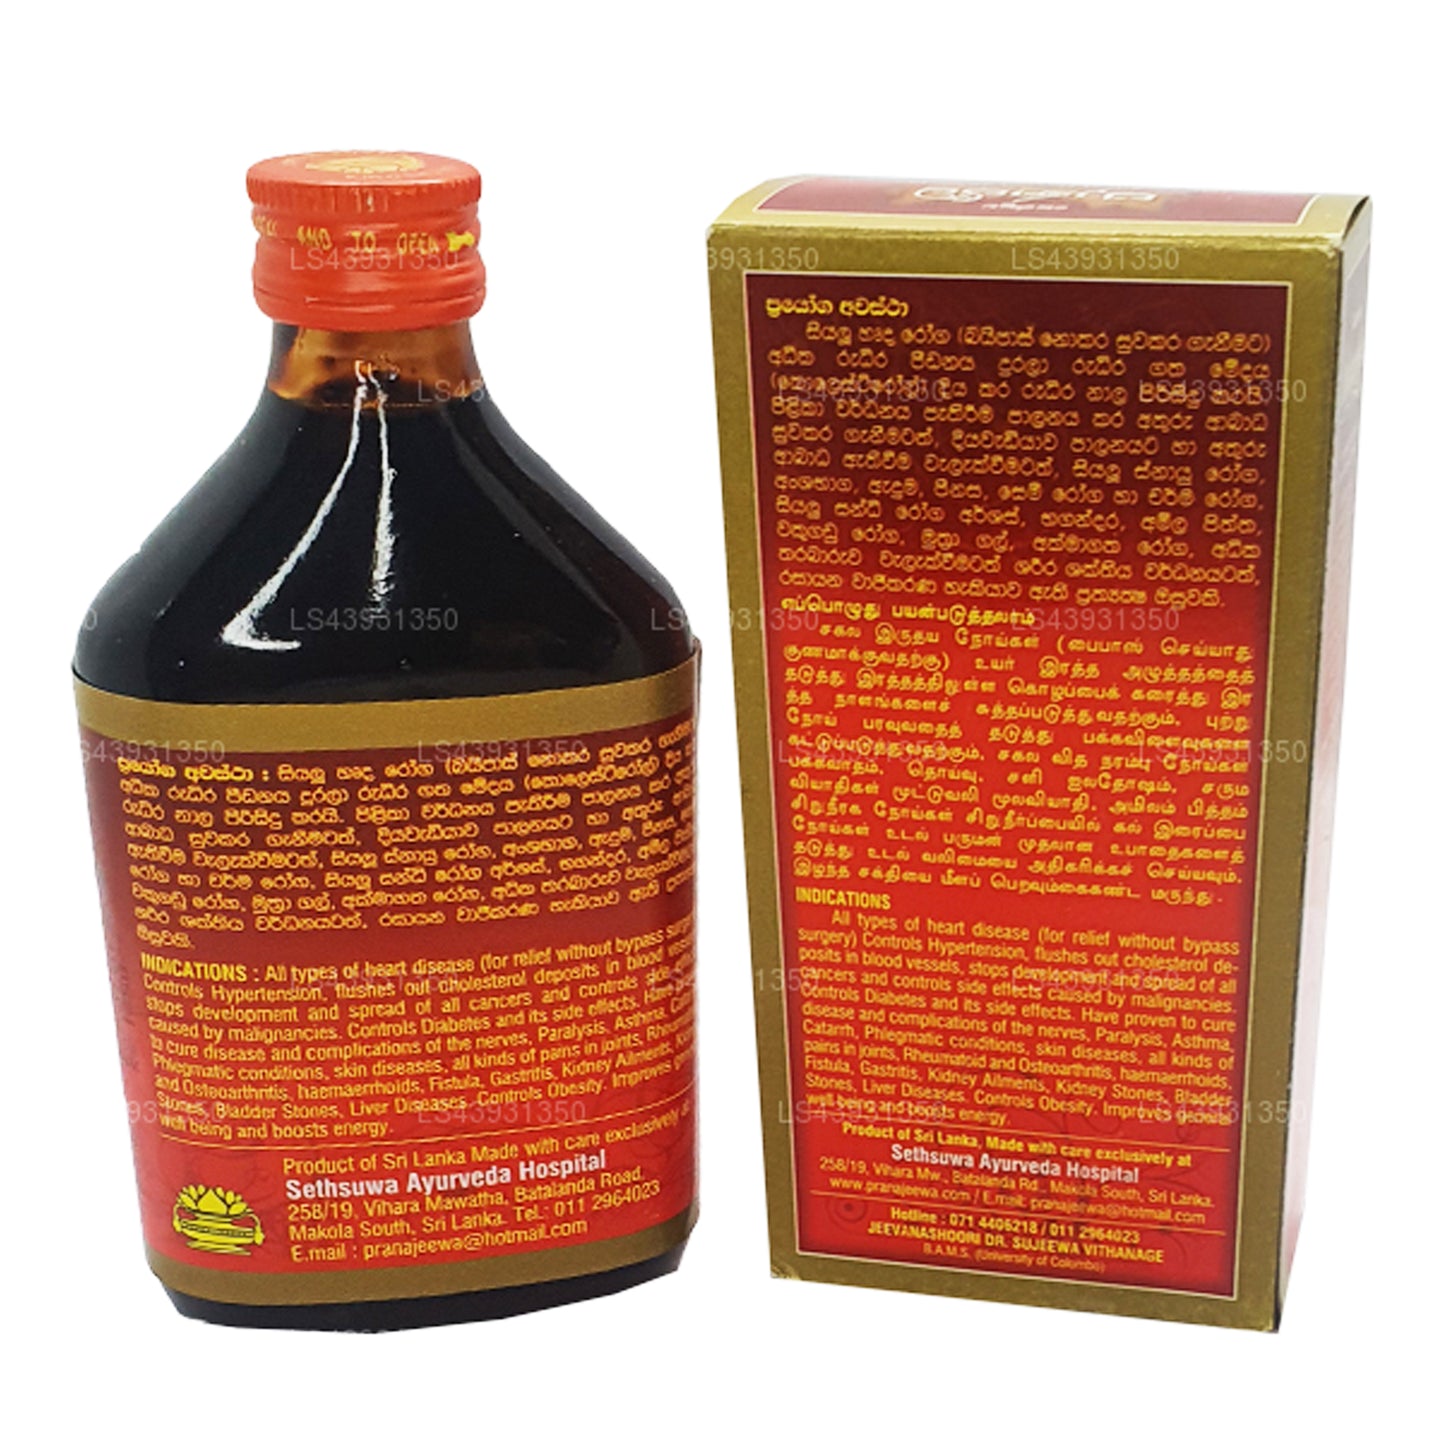 Sethsuwa Pranajeewa Miracle Oil